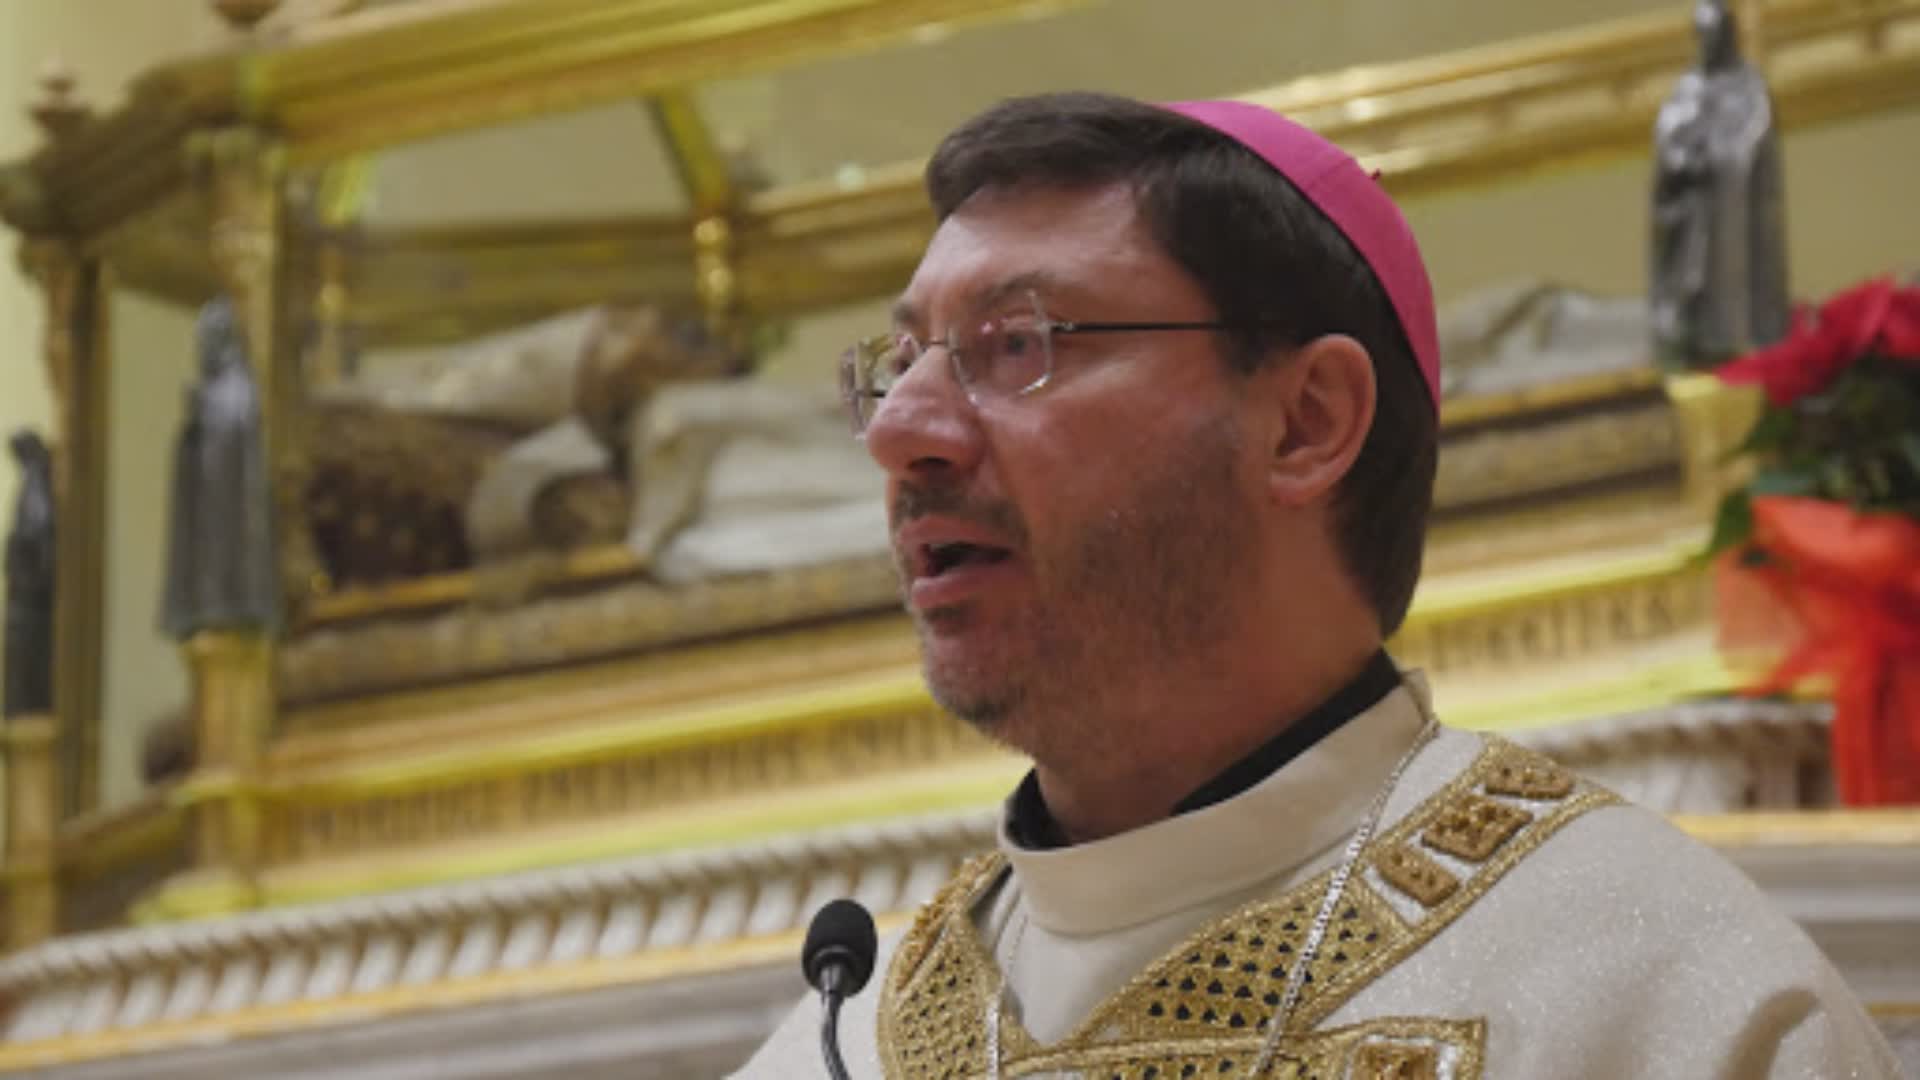 Vescovo di Gubbio: "Ascoltare in silenzio il grido di questi fratelli"